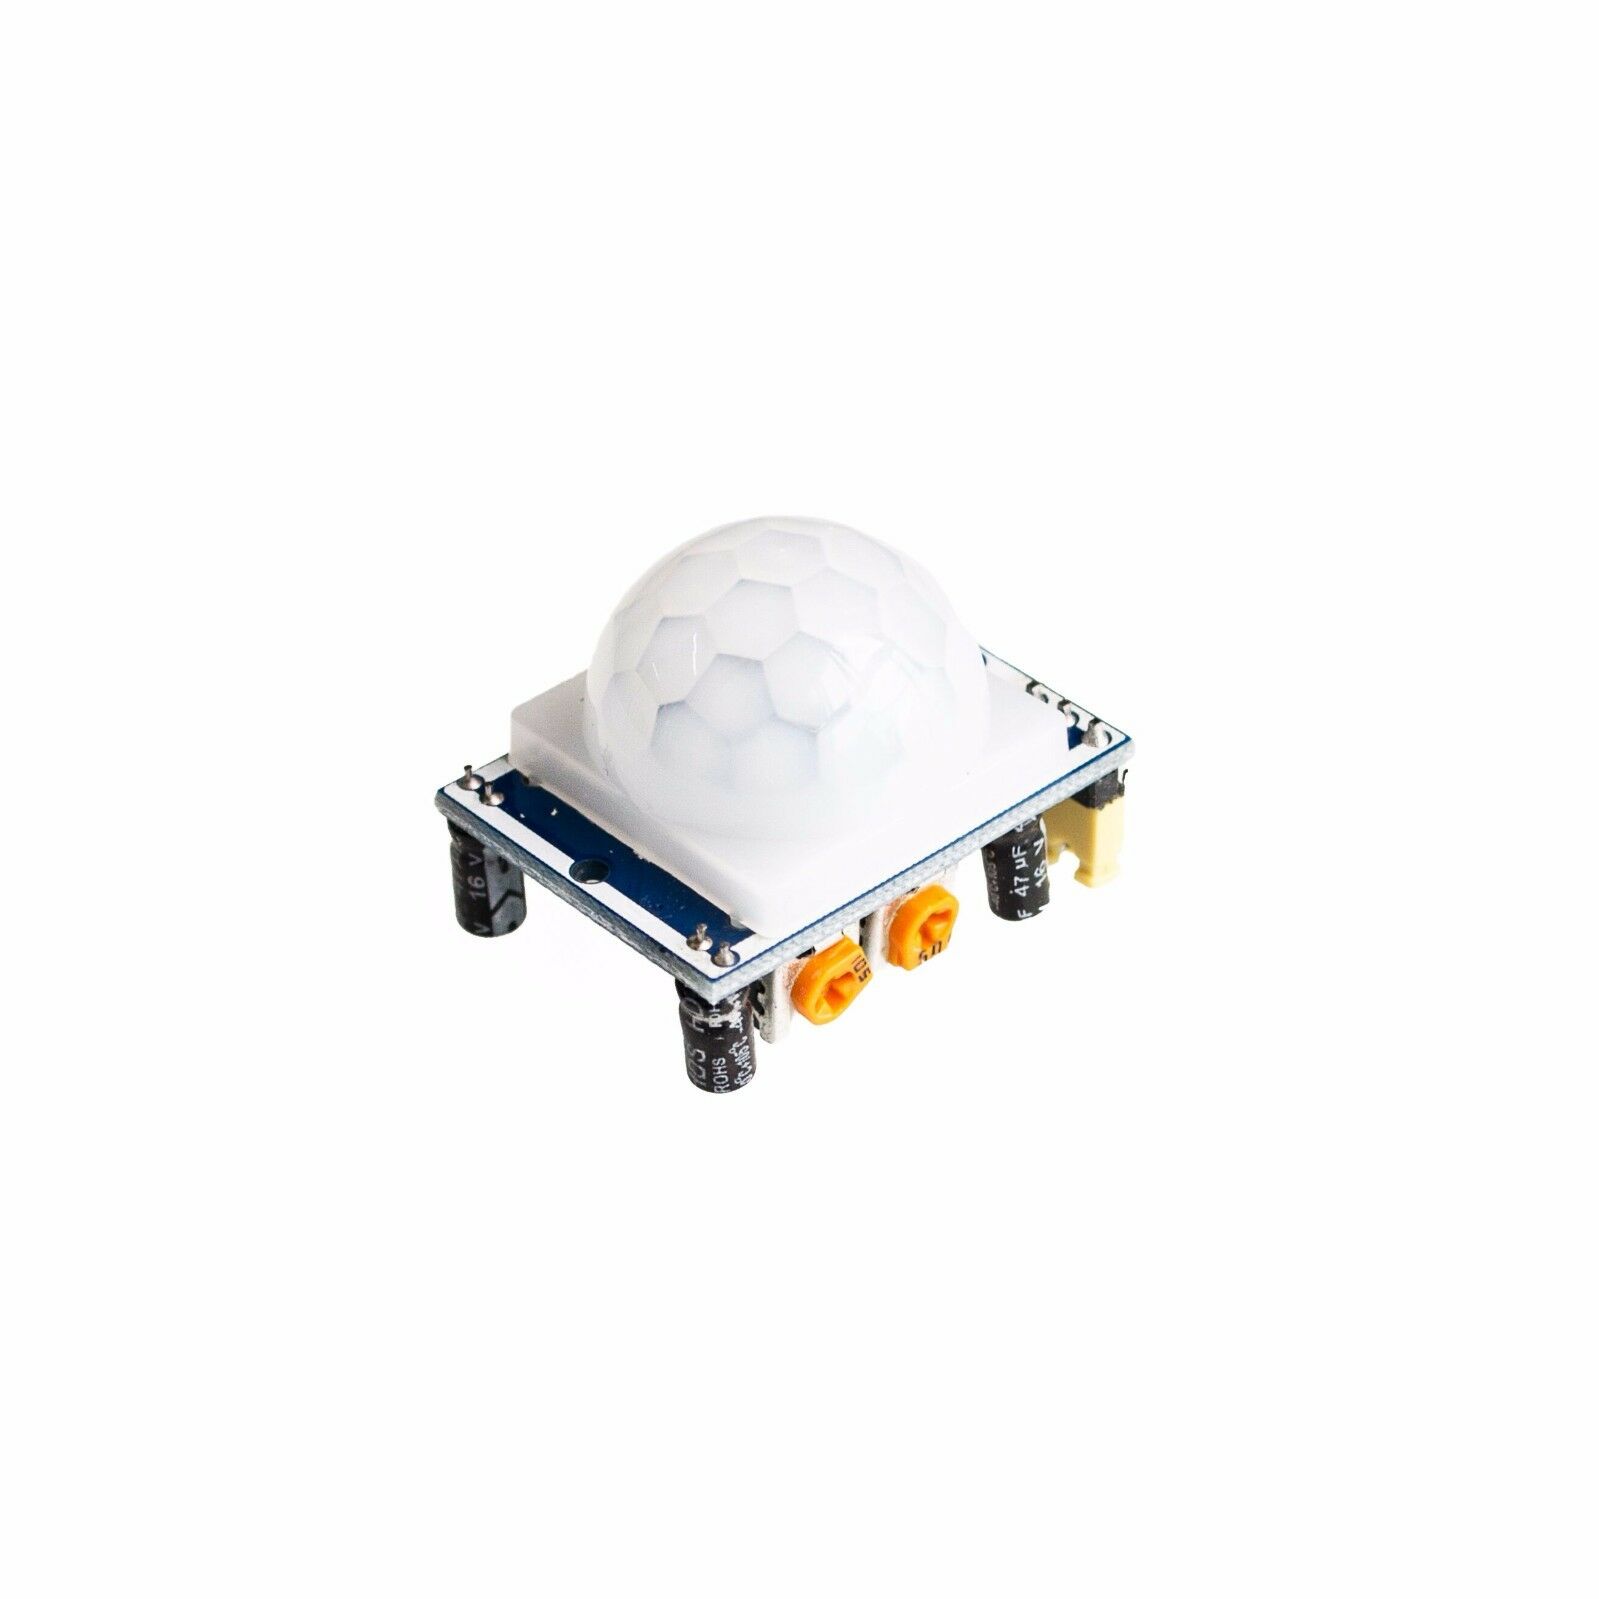 High Quality Hc-sr501 Infrared Pir Motion Sensor Module For Arduino Raspber